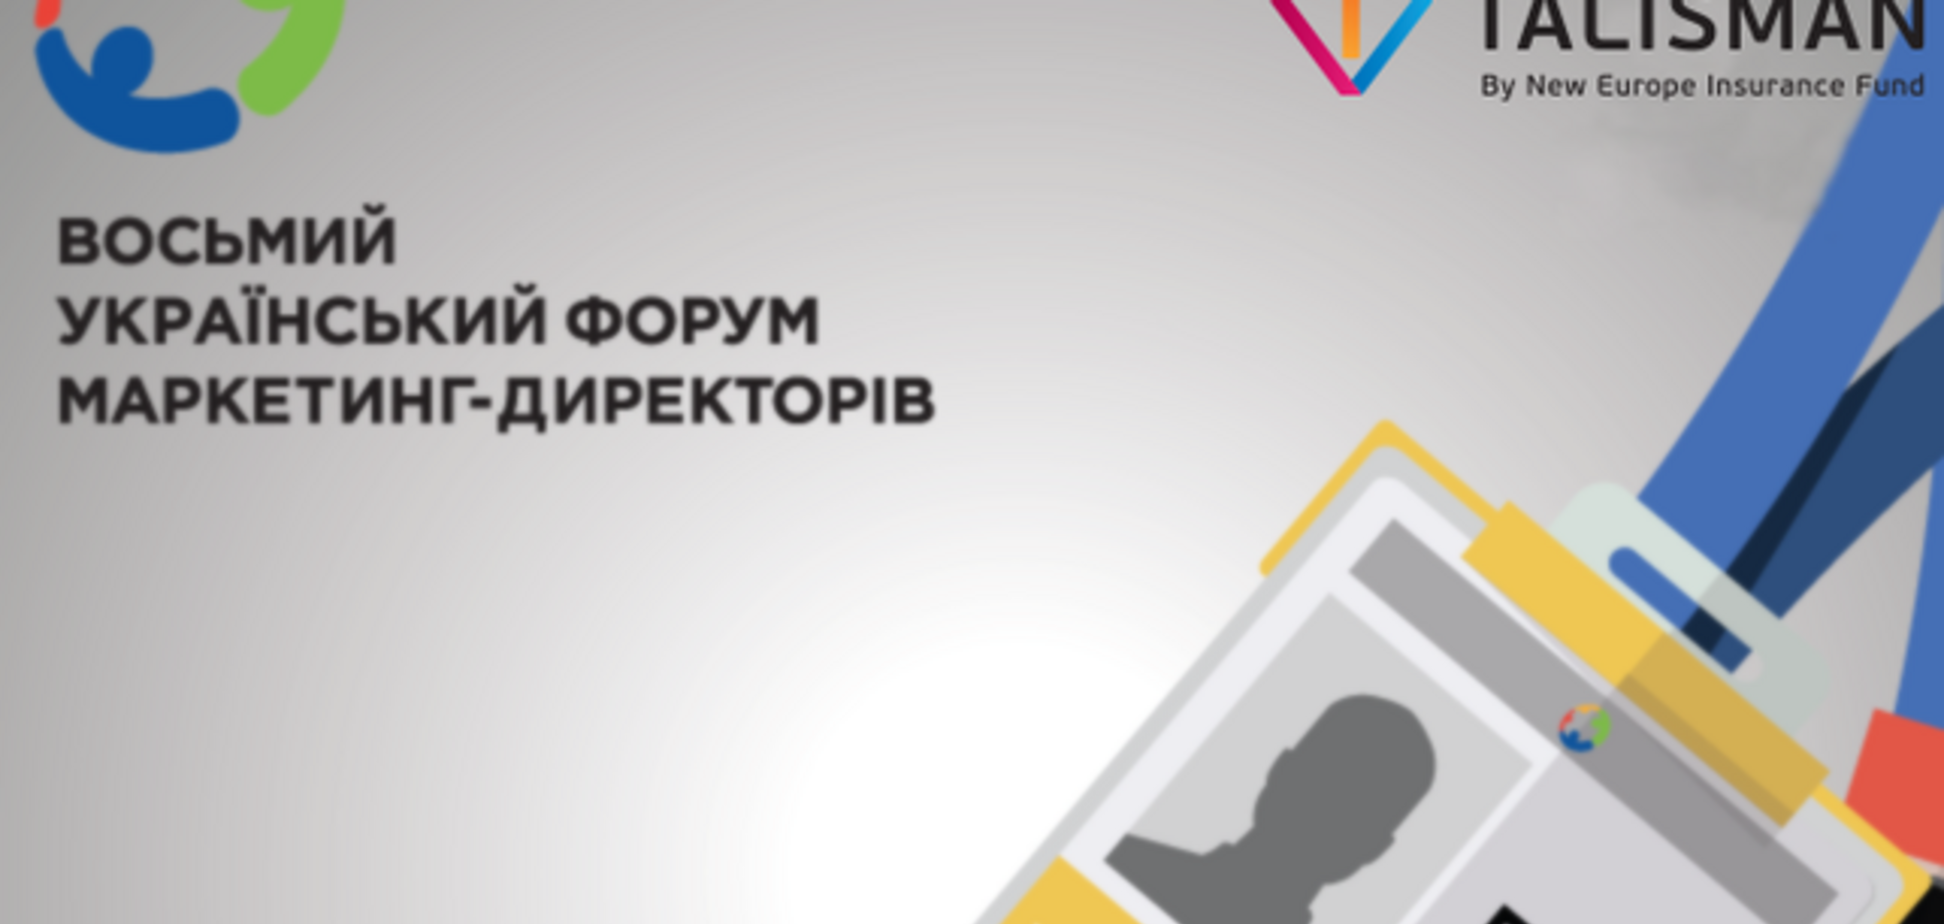 Участие в Украинском форуме маркетинг-директоров гарантировано ТМ Talisman